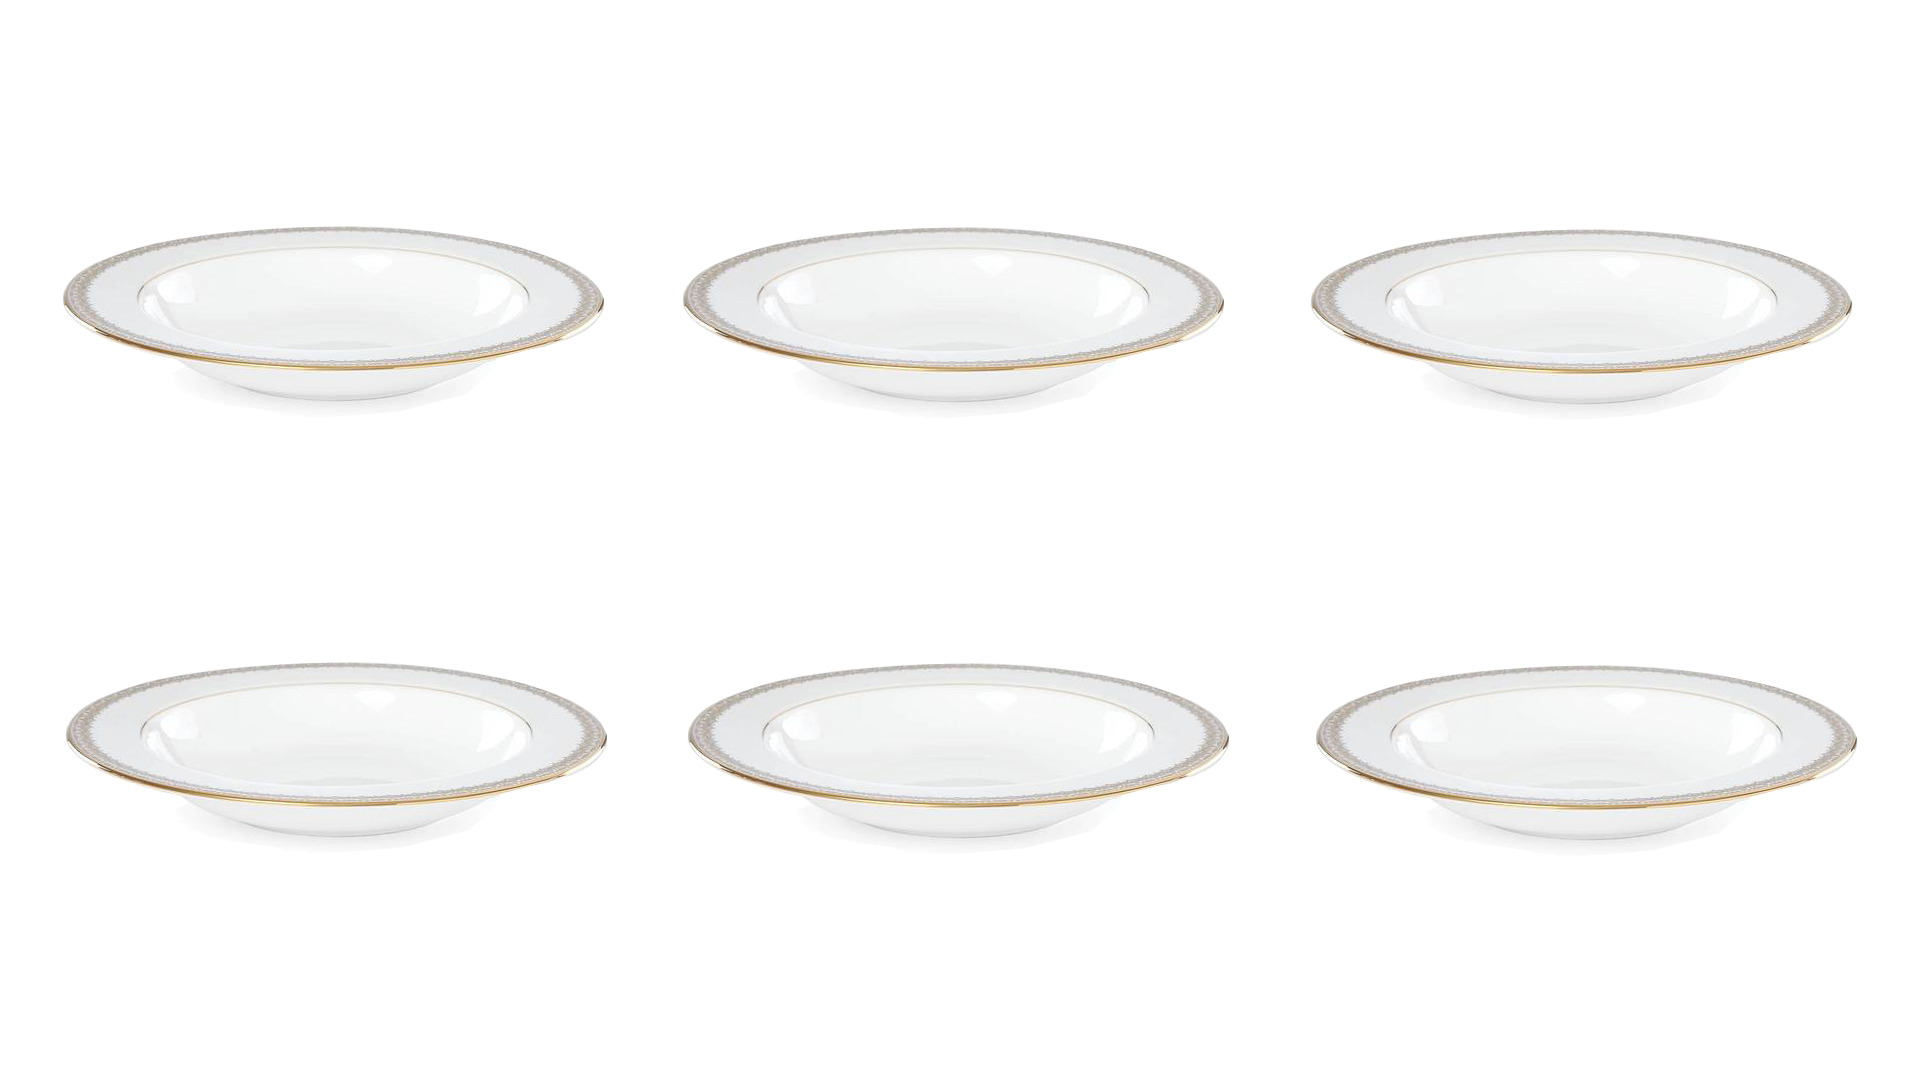 Набор тарелок суповых Lenox Золотые кружева 23 см, фарфор, 6 шт